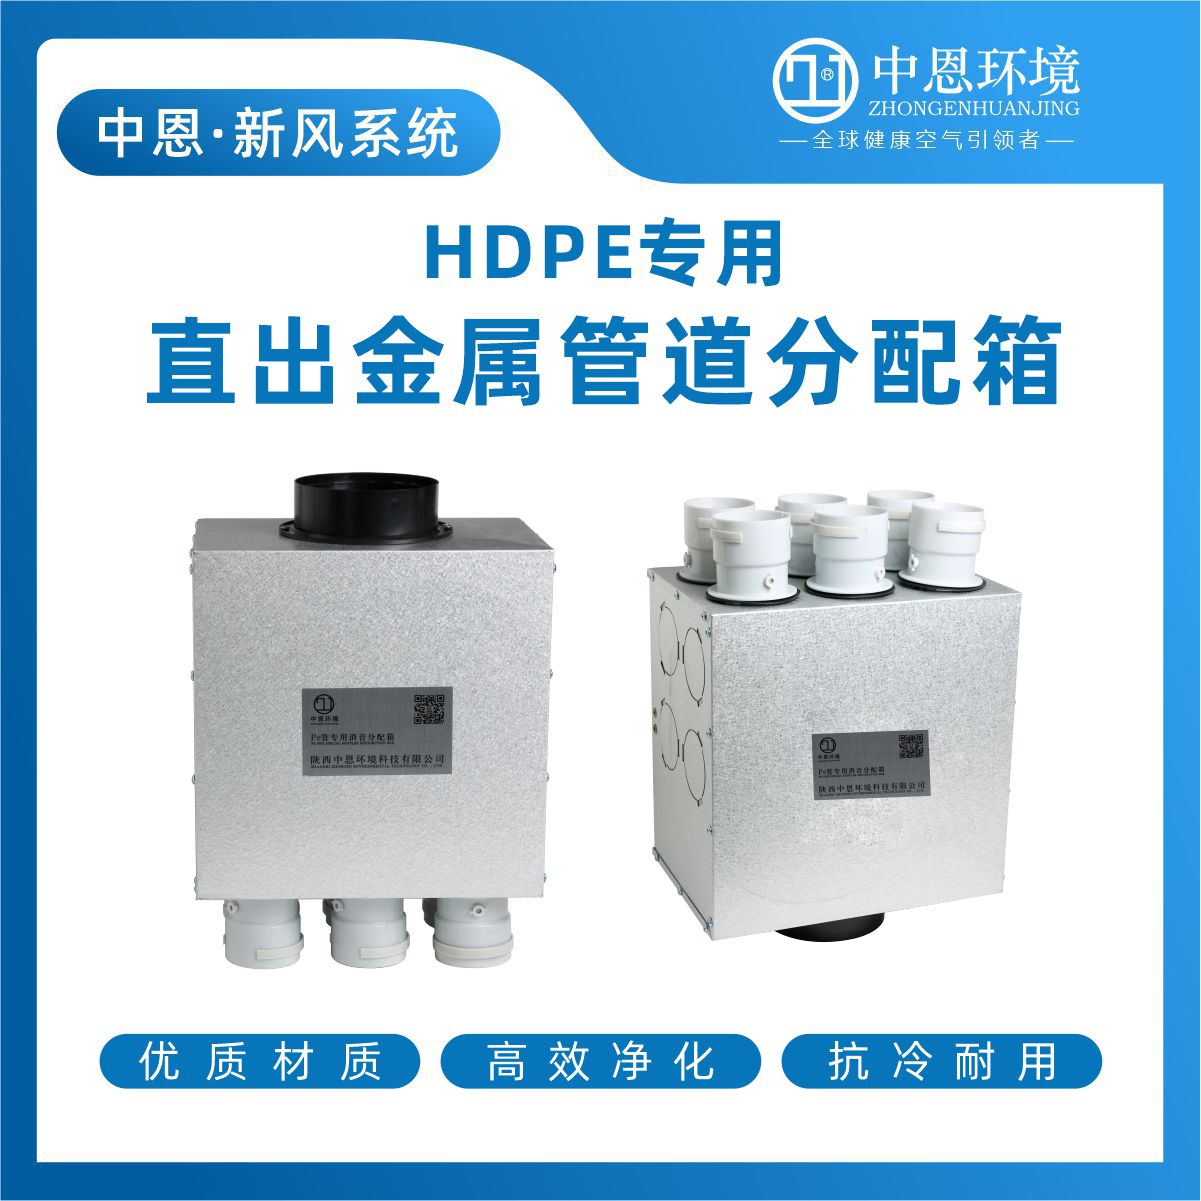 陕西中恩HDPE直出金属管道分配箱价格 分配箱生产厂家